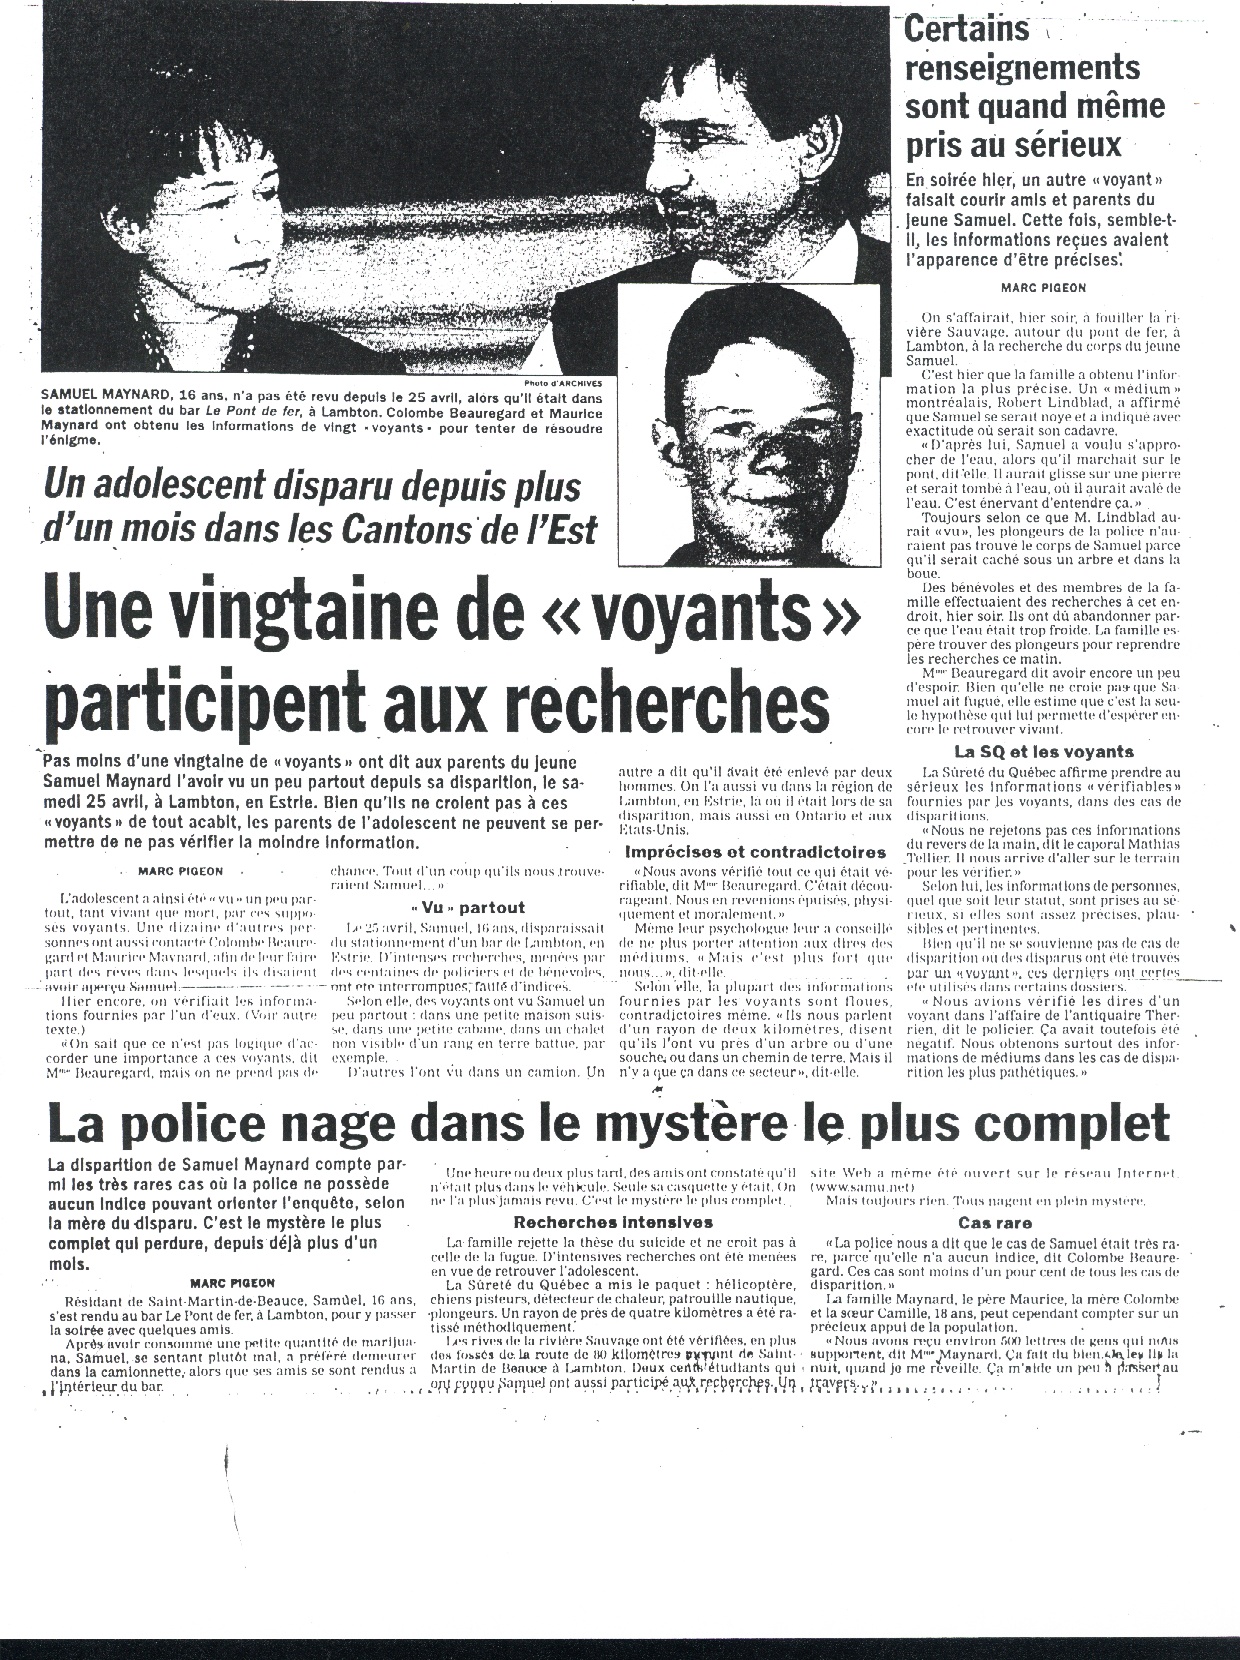 Journal de Montreal 31 - 5 - 98